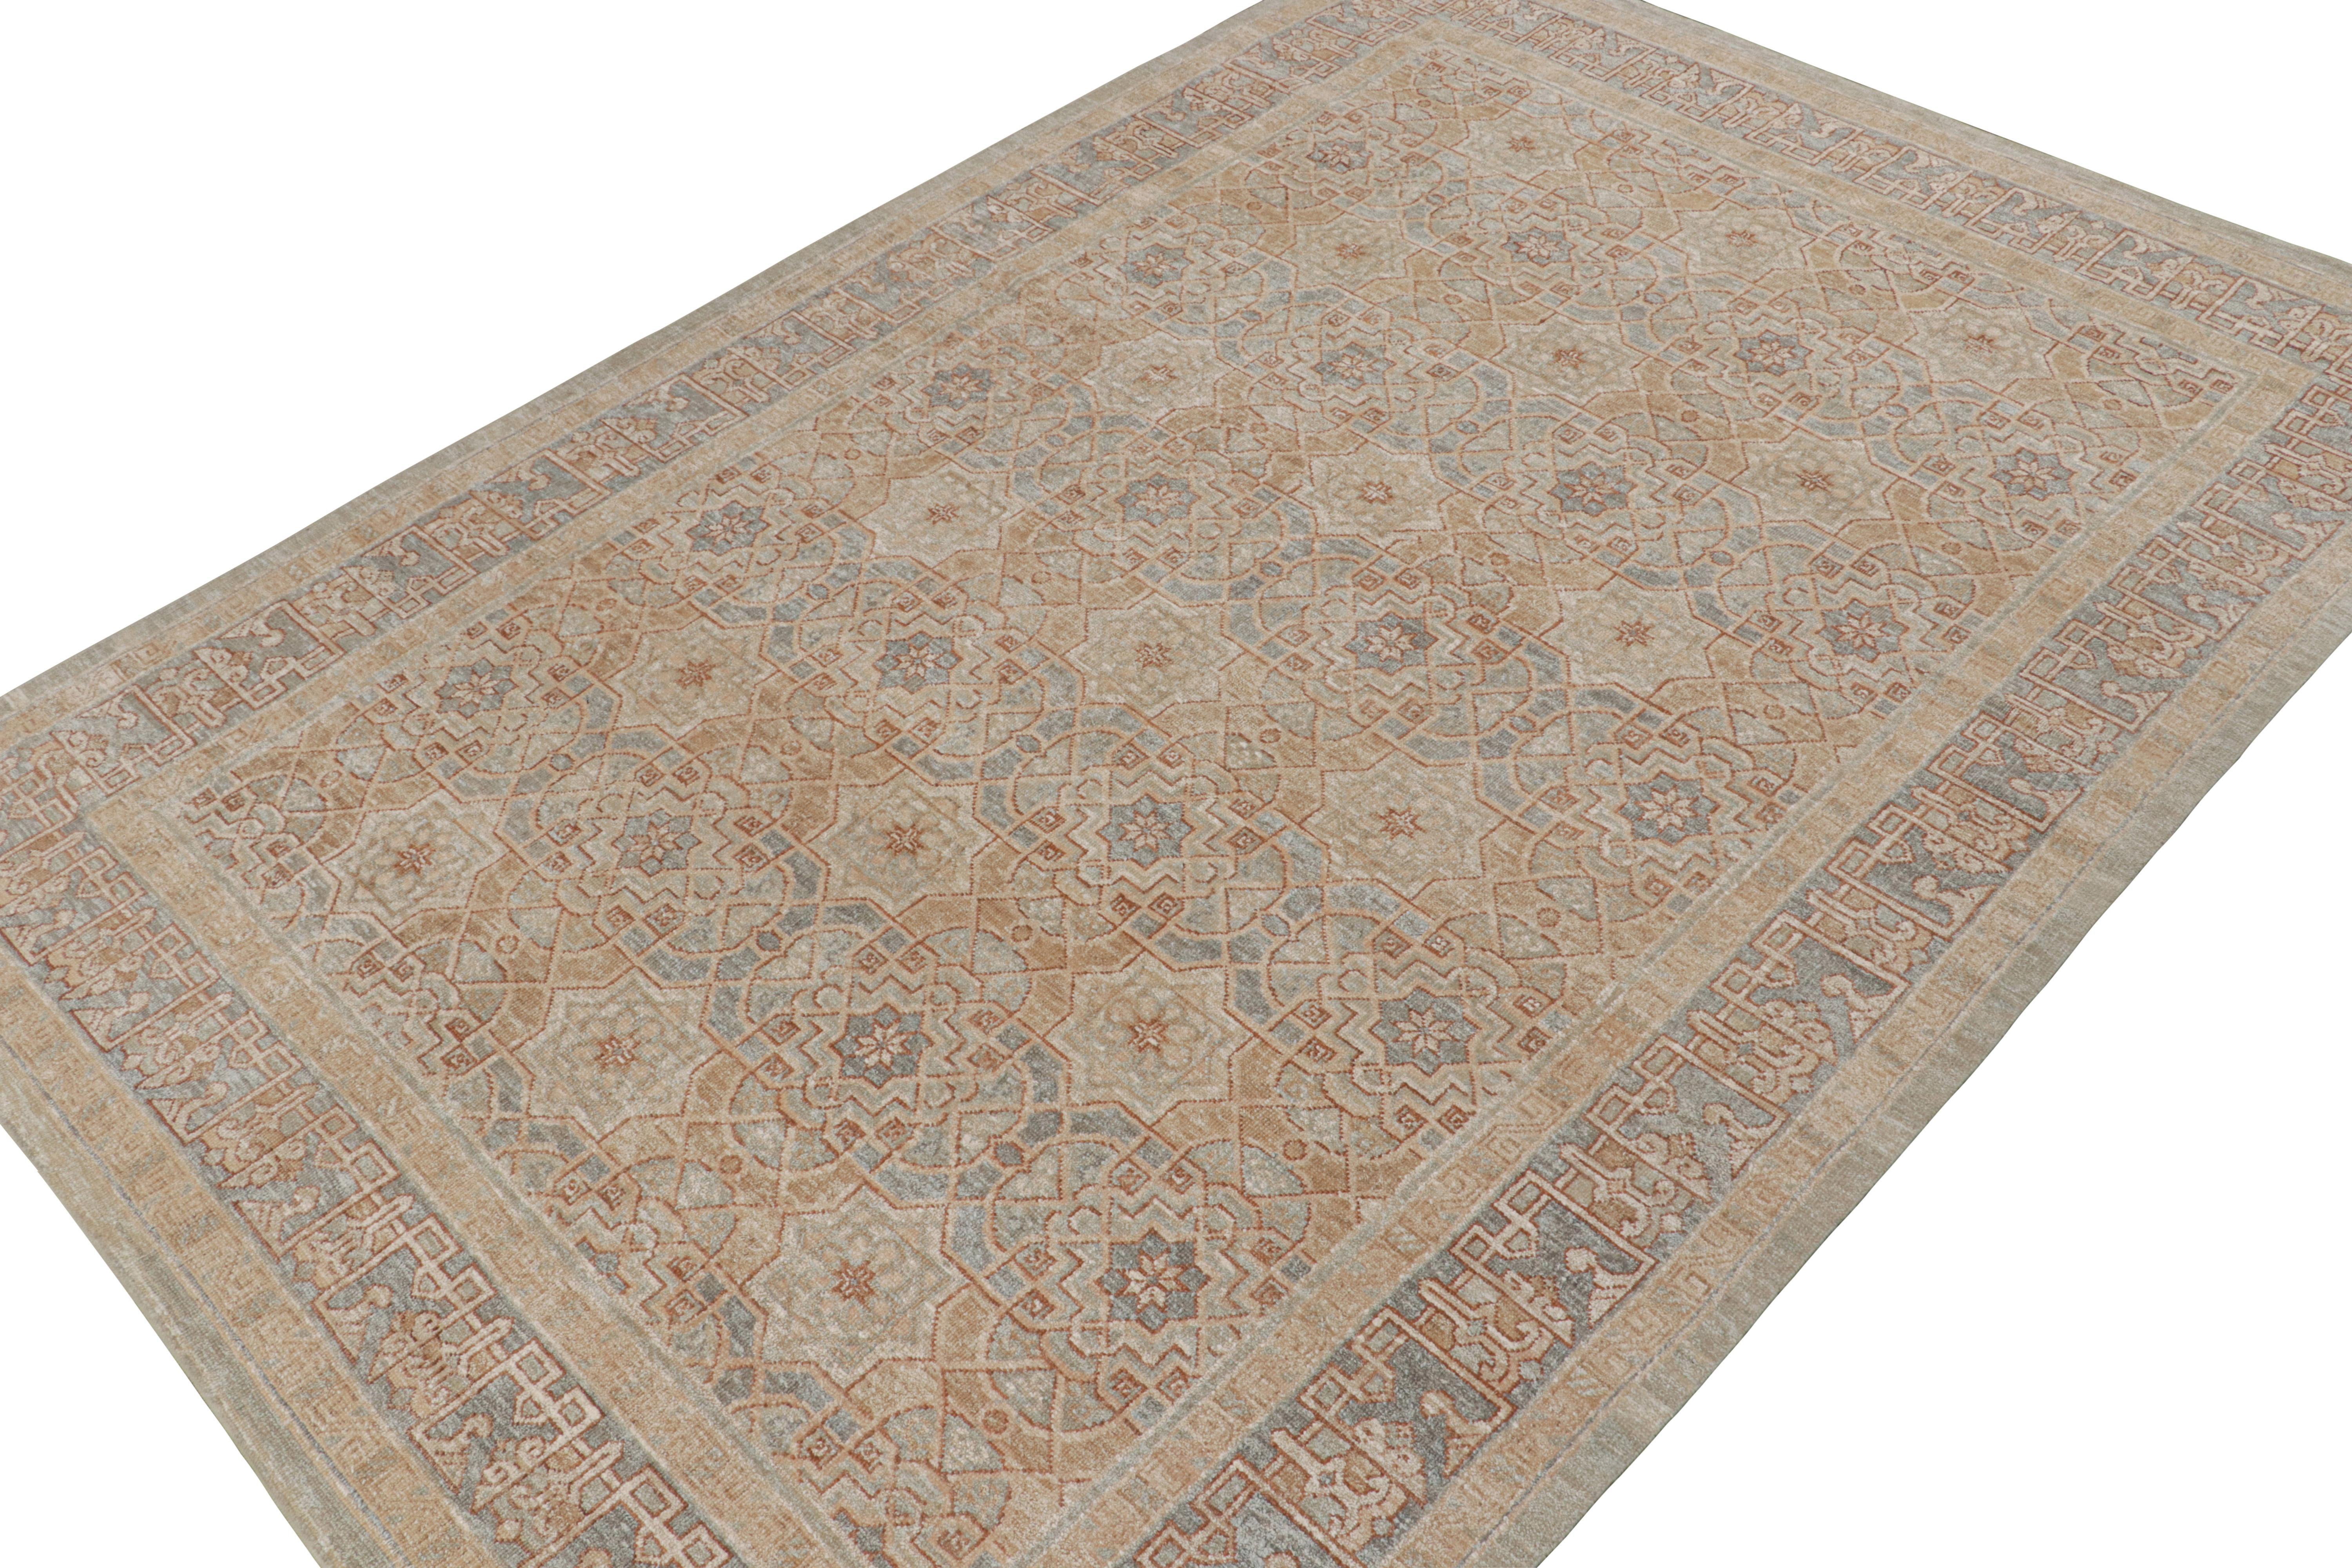 Rug & Kilim's Oushak Style Teppich in Beige-Braun & Blauen Geometrischen Mustern (Handgeknüpft) im Angebot